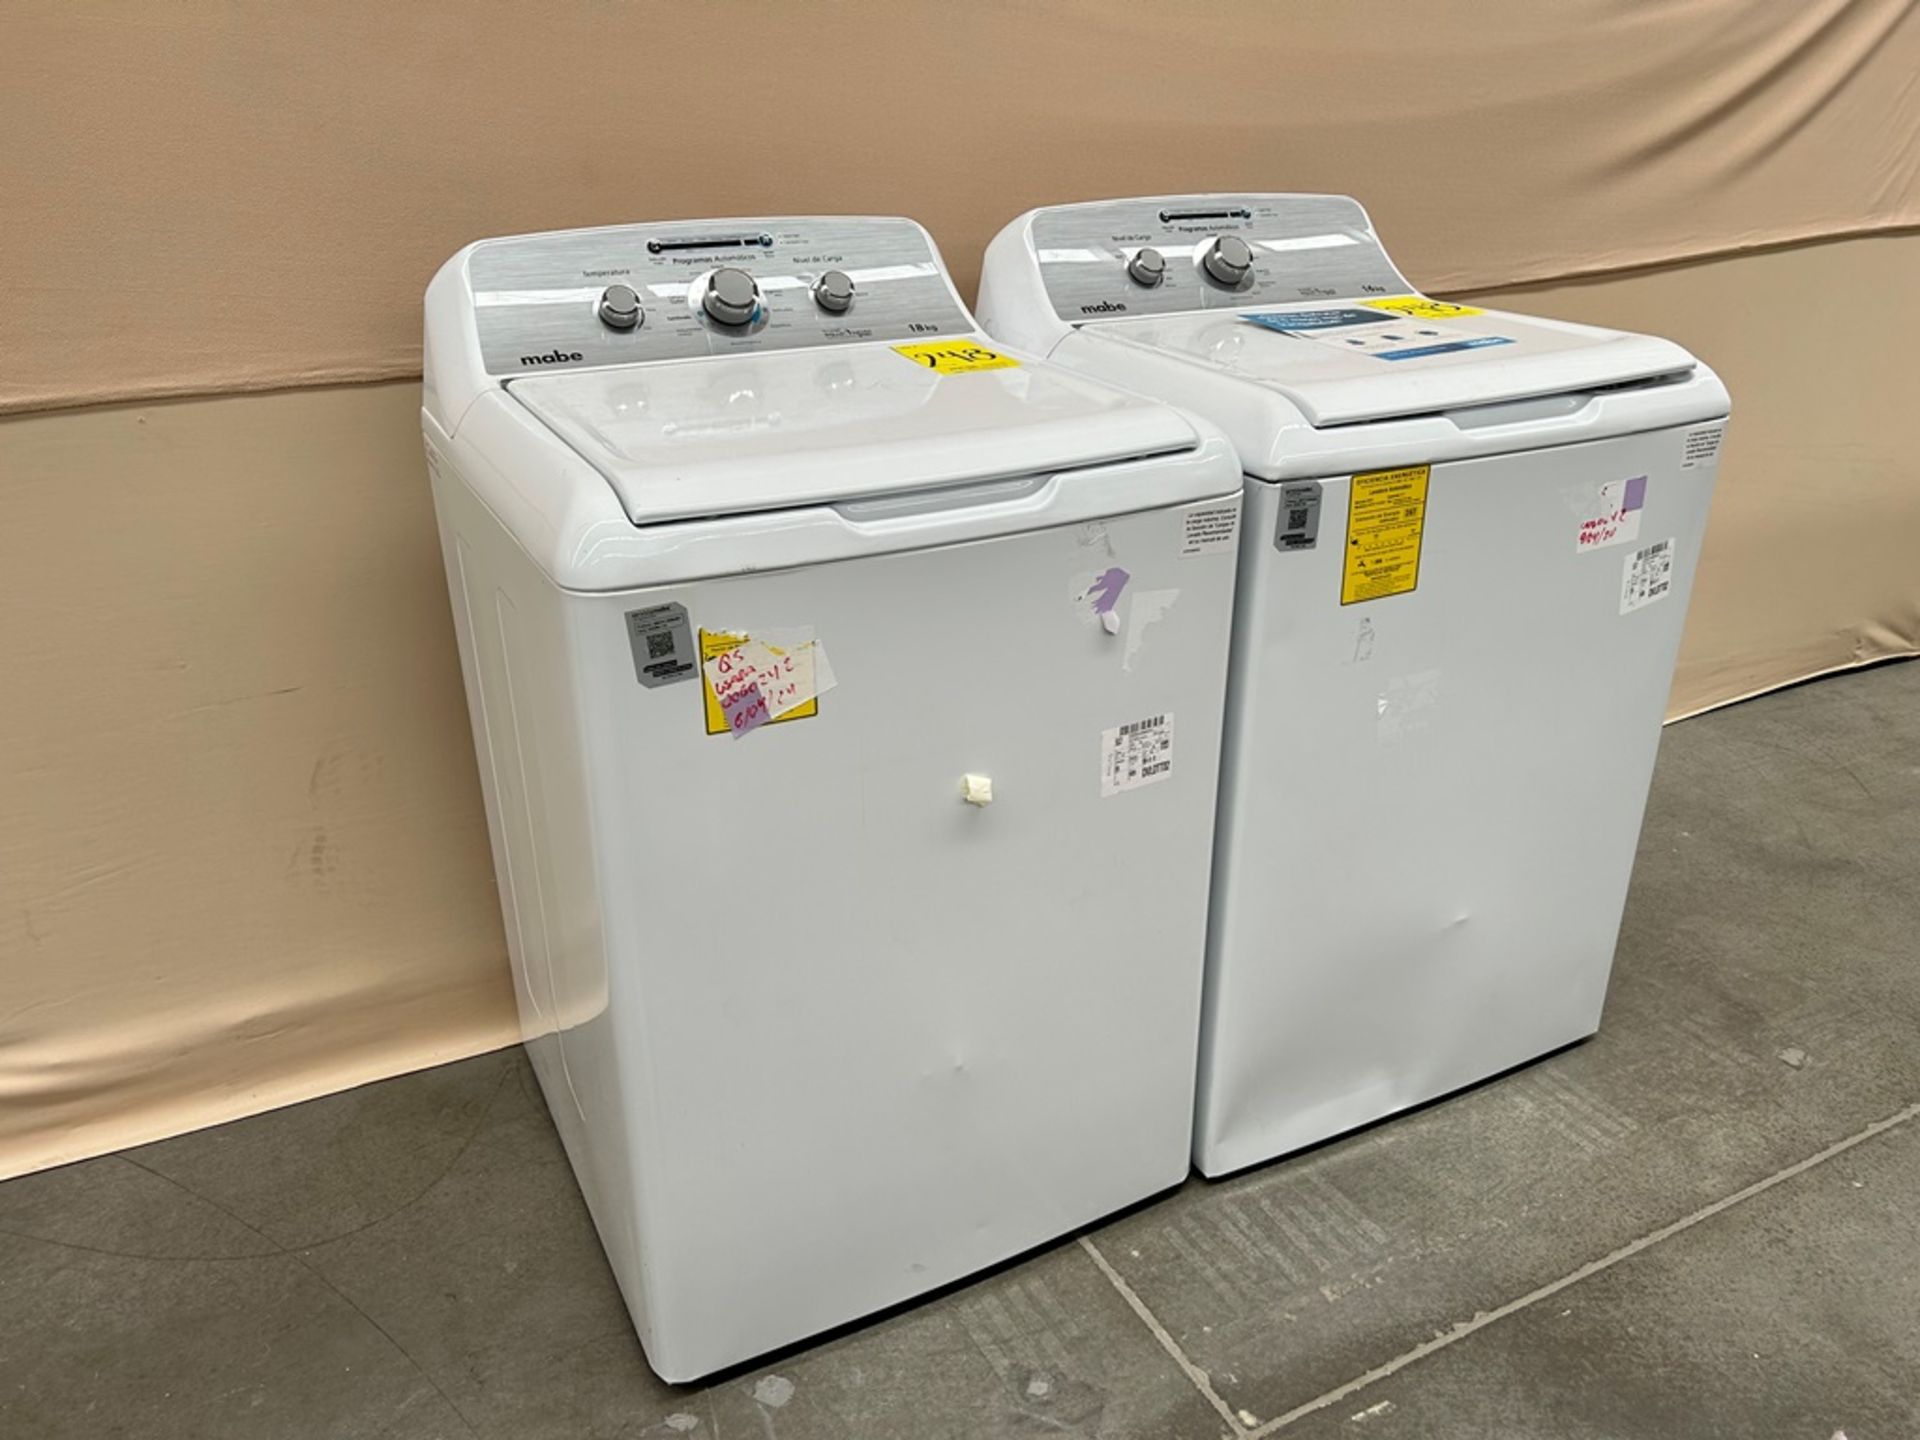 Lote de 2 lavadoras contiene: 1 Lavadora de 18 KG Marca MABE, Modelo LMA78113CBAB01, Serie S91112, - Image 2 of 6